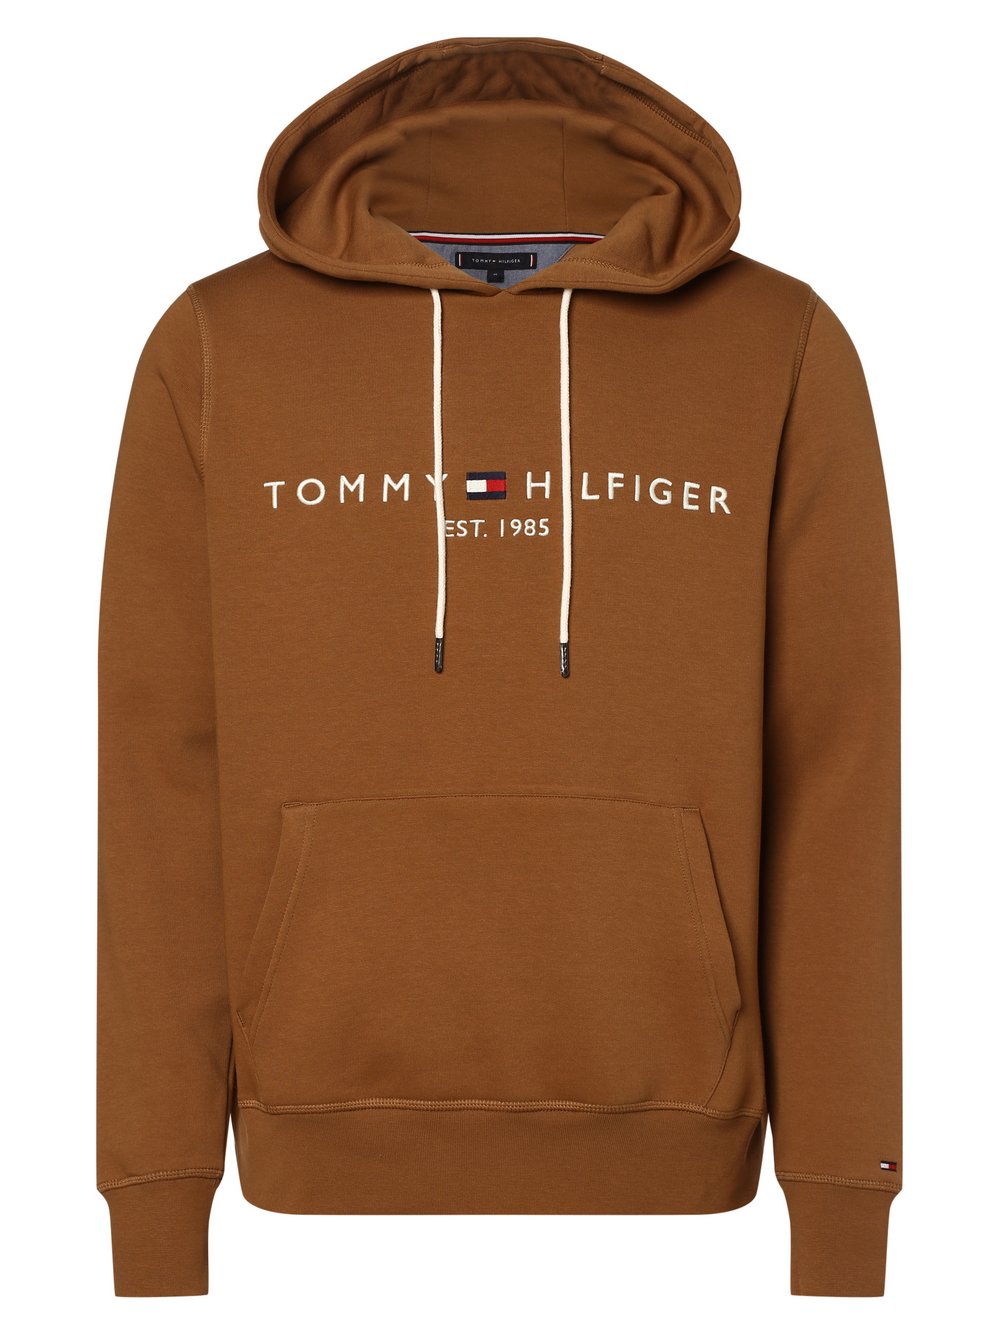 Tommy Hilfiger - Męska bluza z kapturem, brązowy